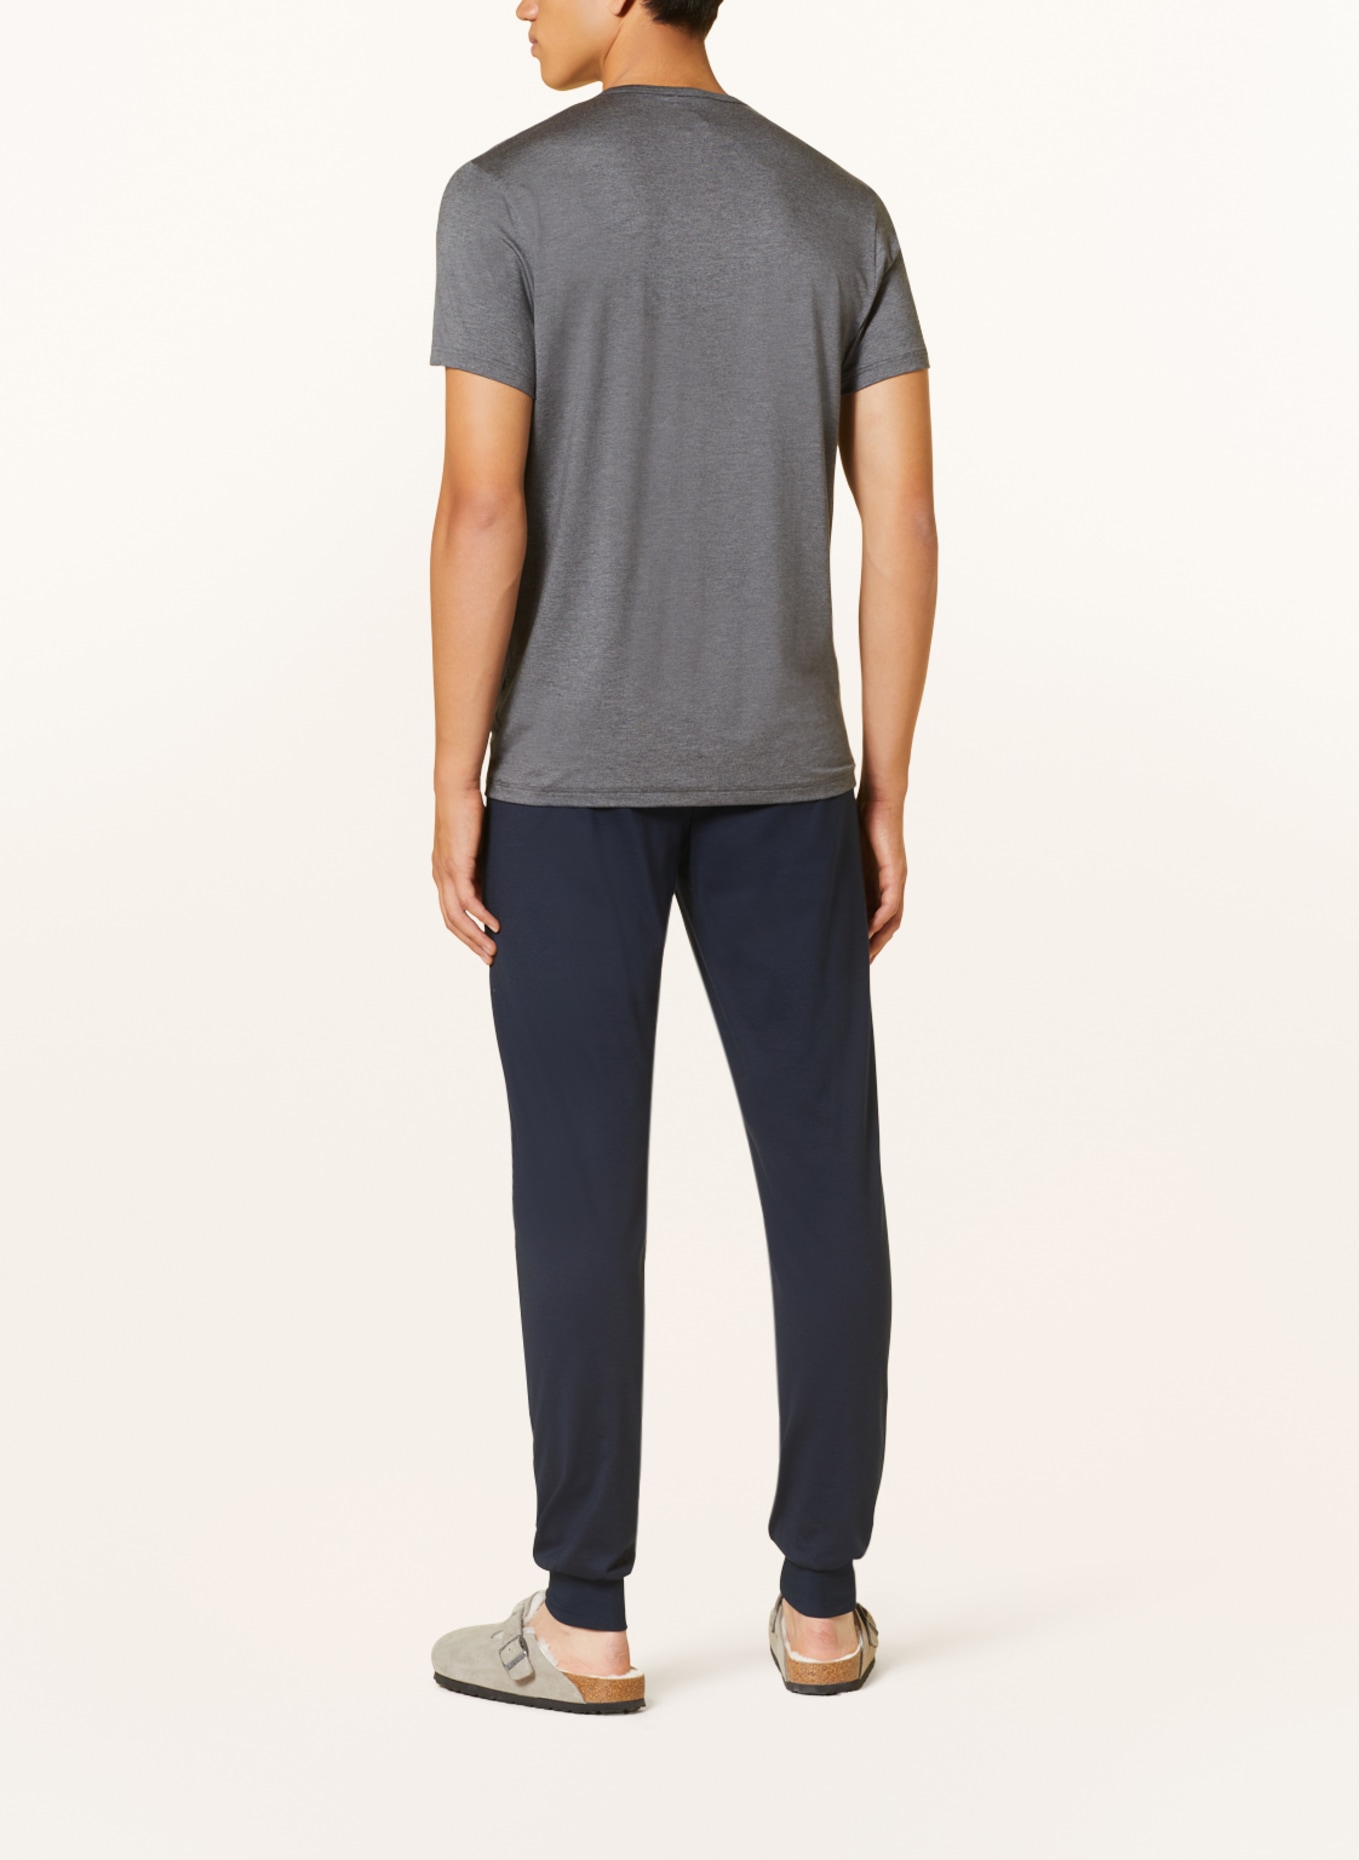 mey Pajama shirt series JEFFERSON MODAL, Color: GRAY (Image 3)